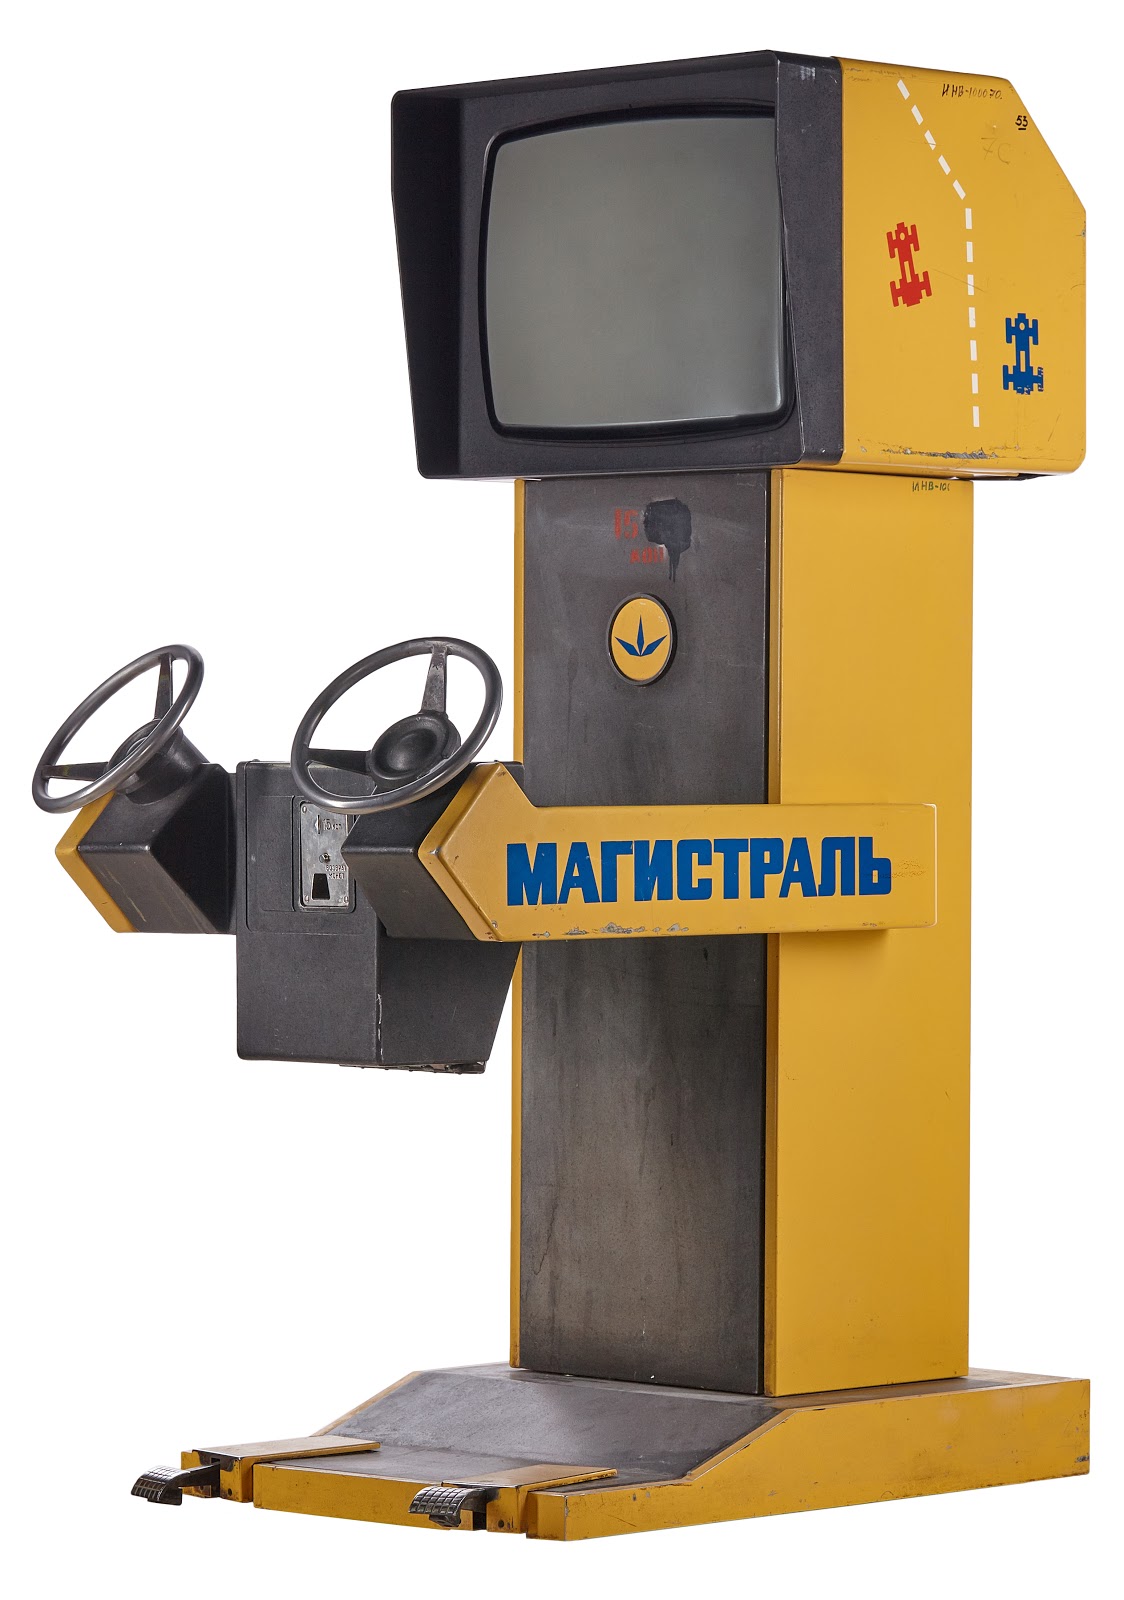 Игровые автоматы: откуда они взялись в СССР и как устроены - 11